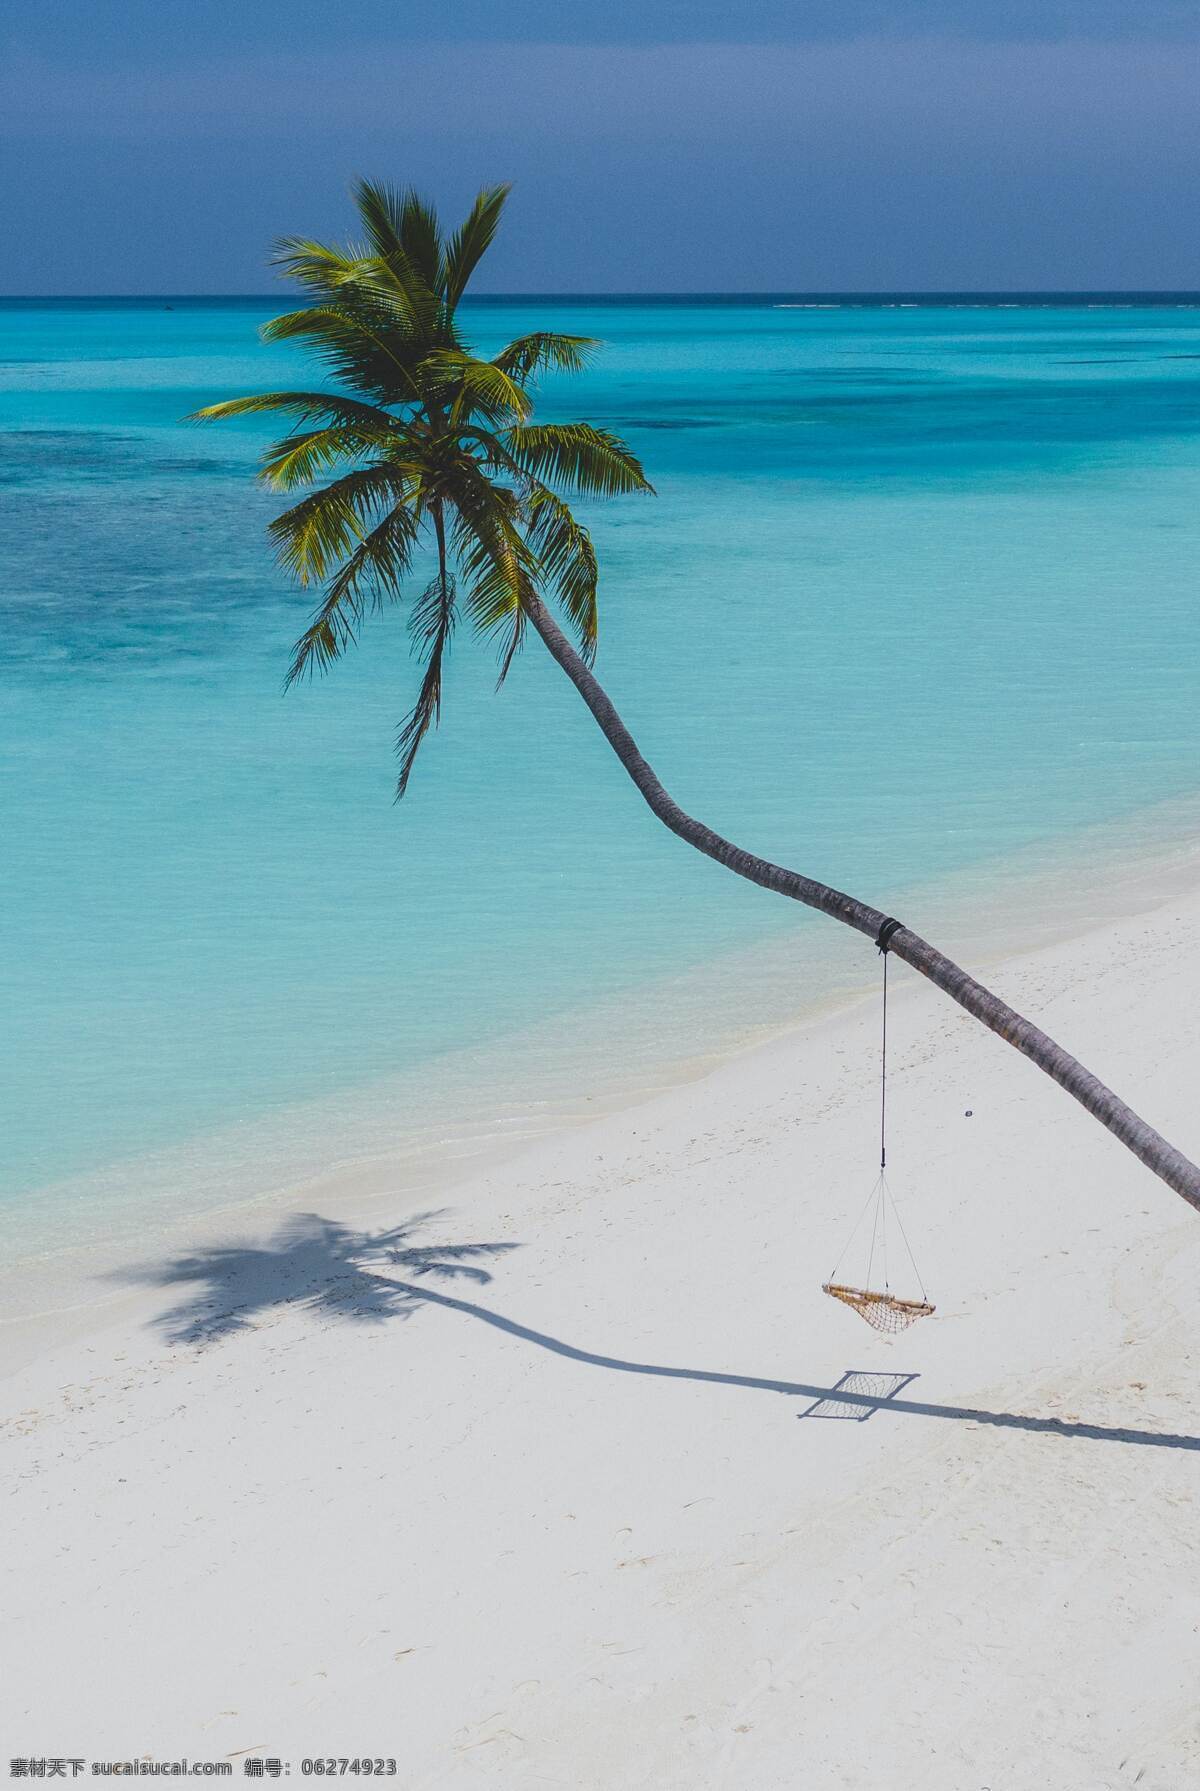 阳光 海岸 椰子树 海滩 沙滩 蓝色大海 椰子 自然景观 山水风景